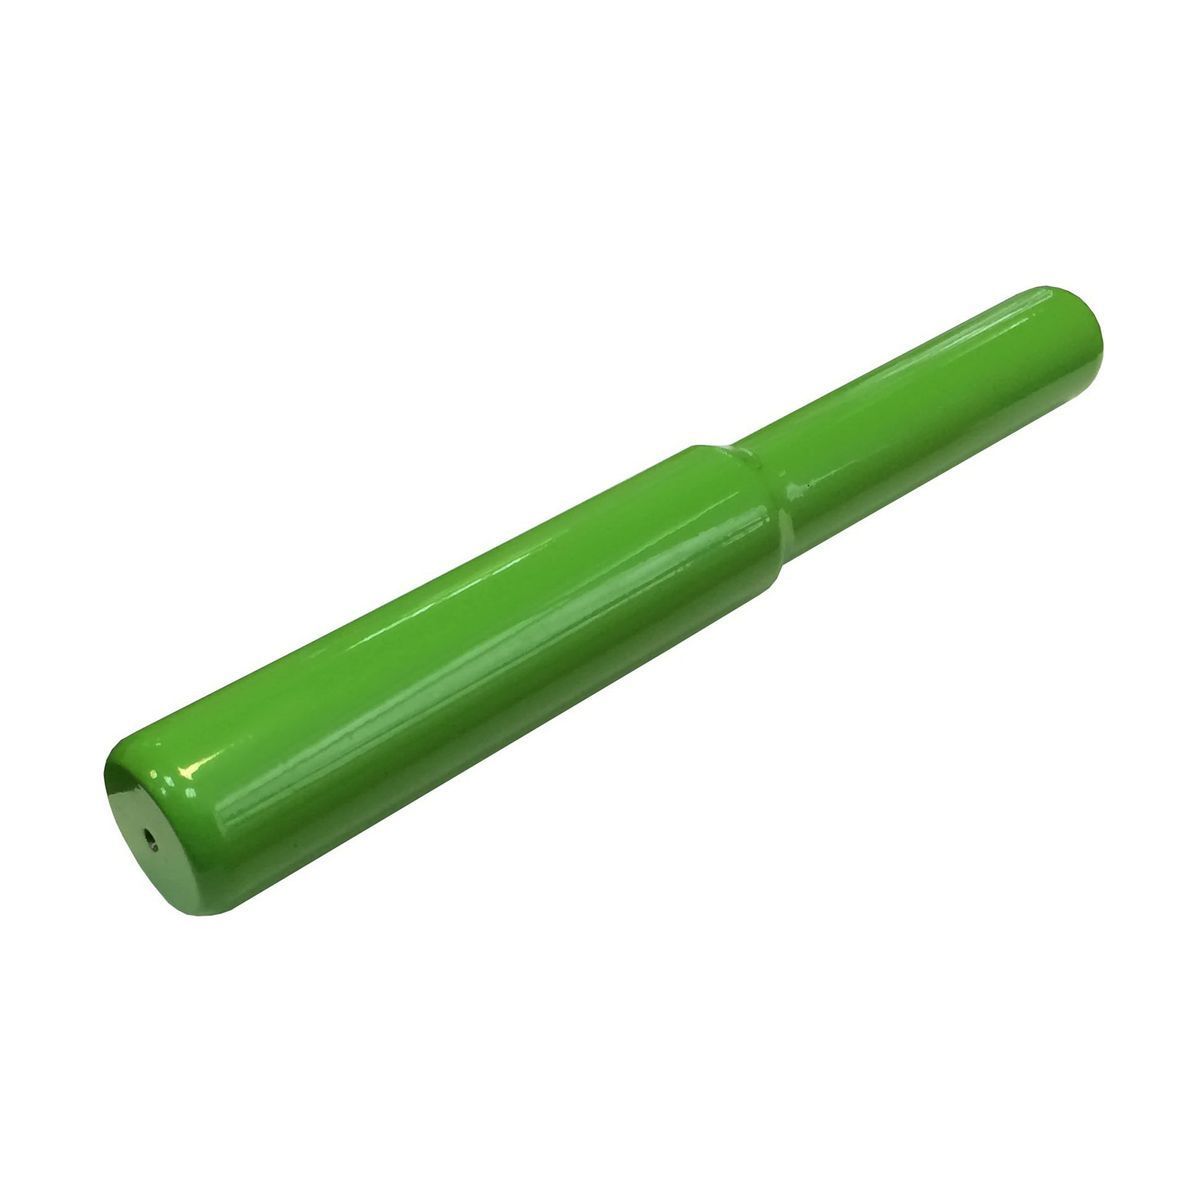 Граната для метания 0,5 кг (зеленая) Zavodsporta - в интернет магазине Acrobat24.ru 